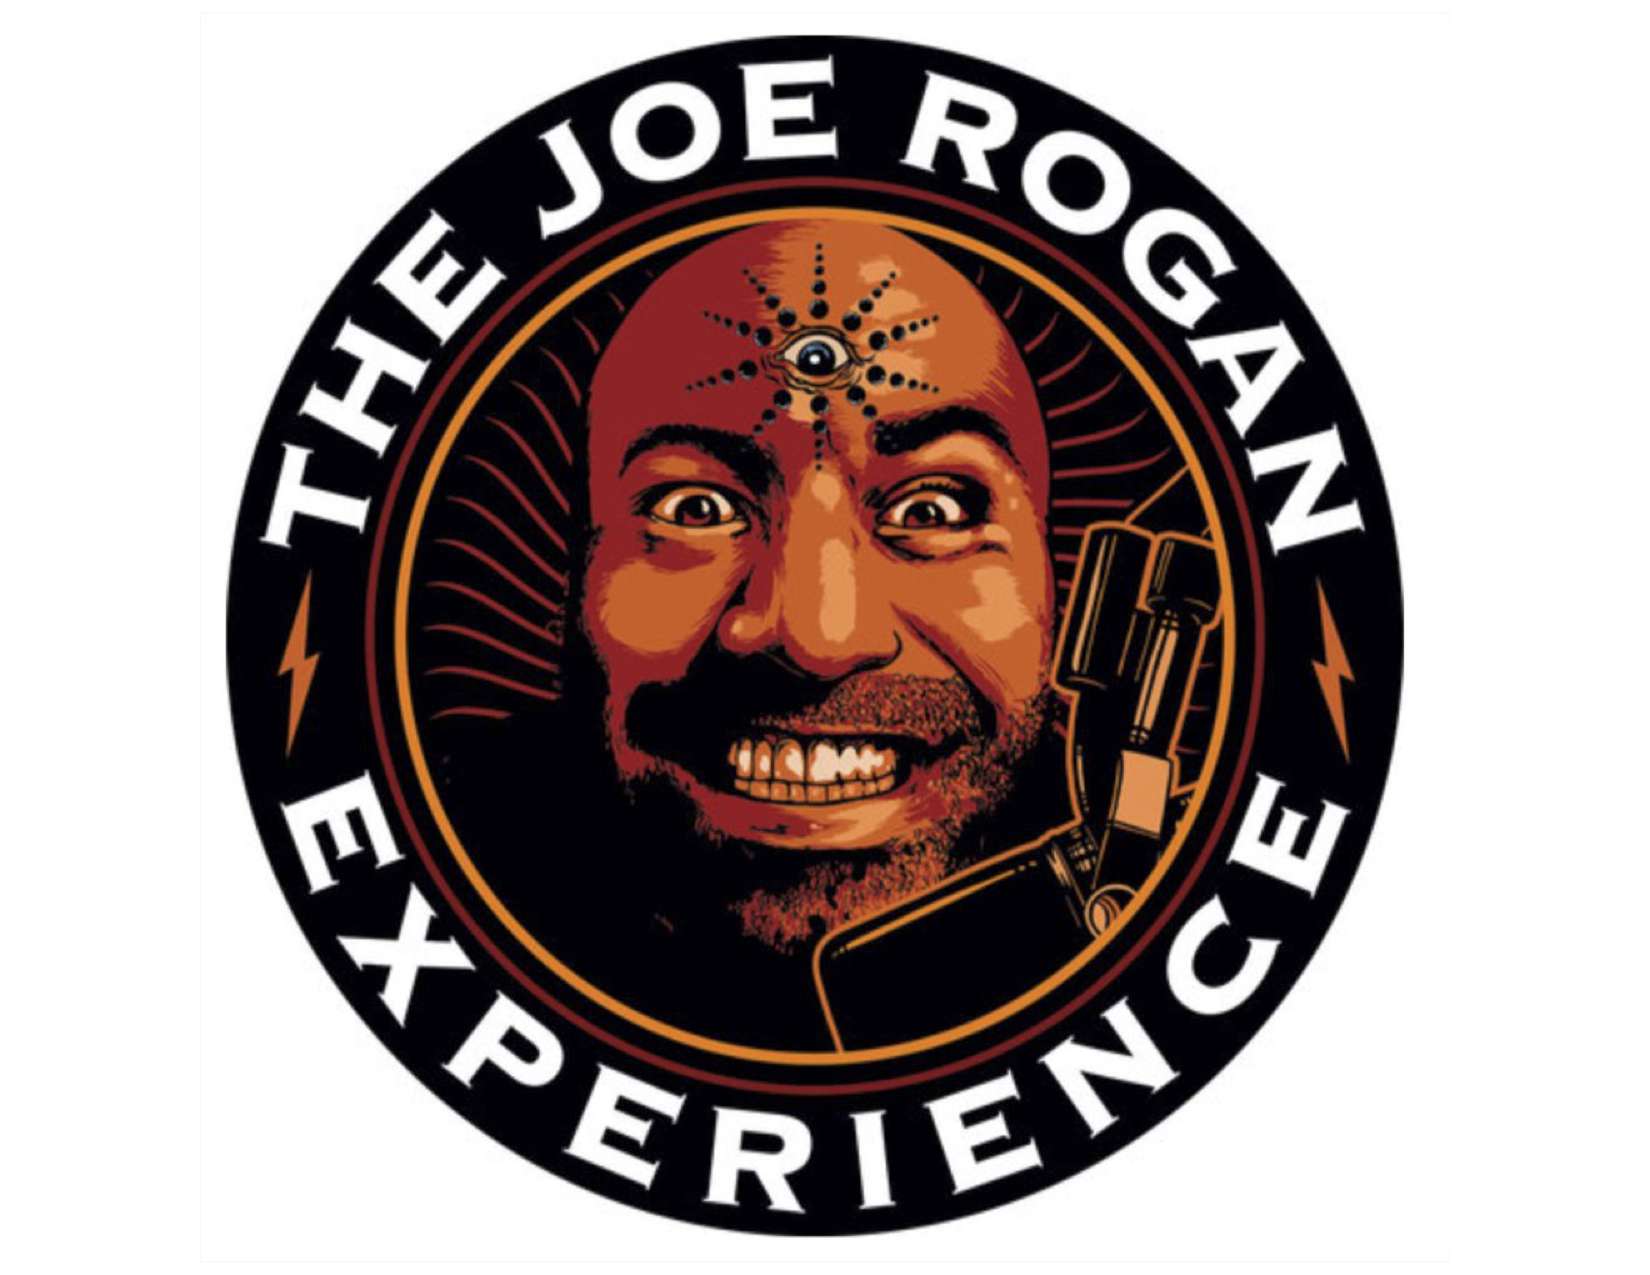 Joe Rogan Experience podcast